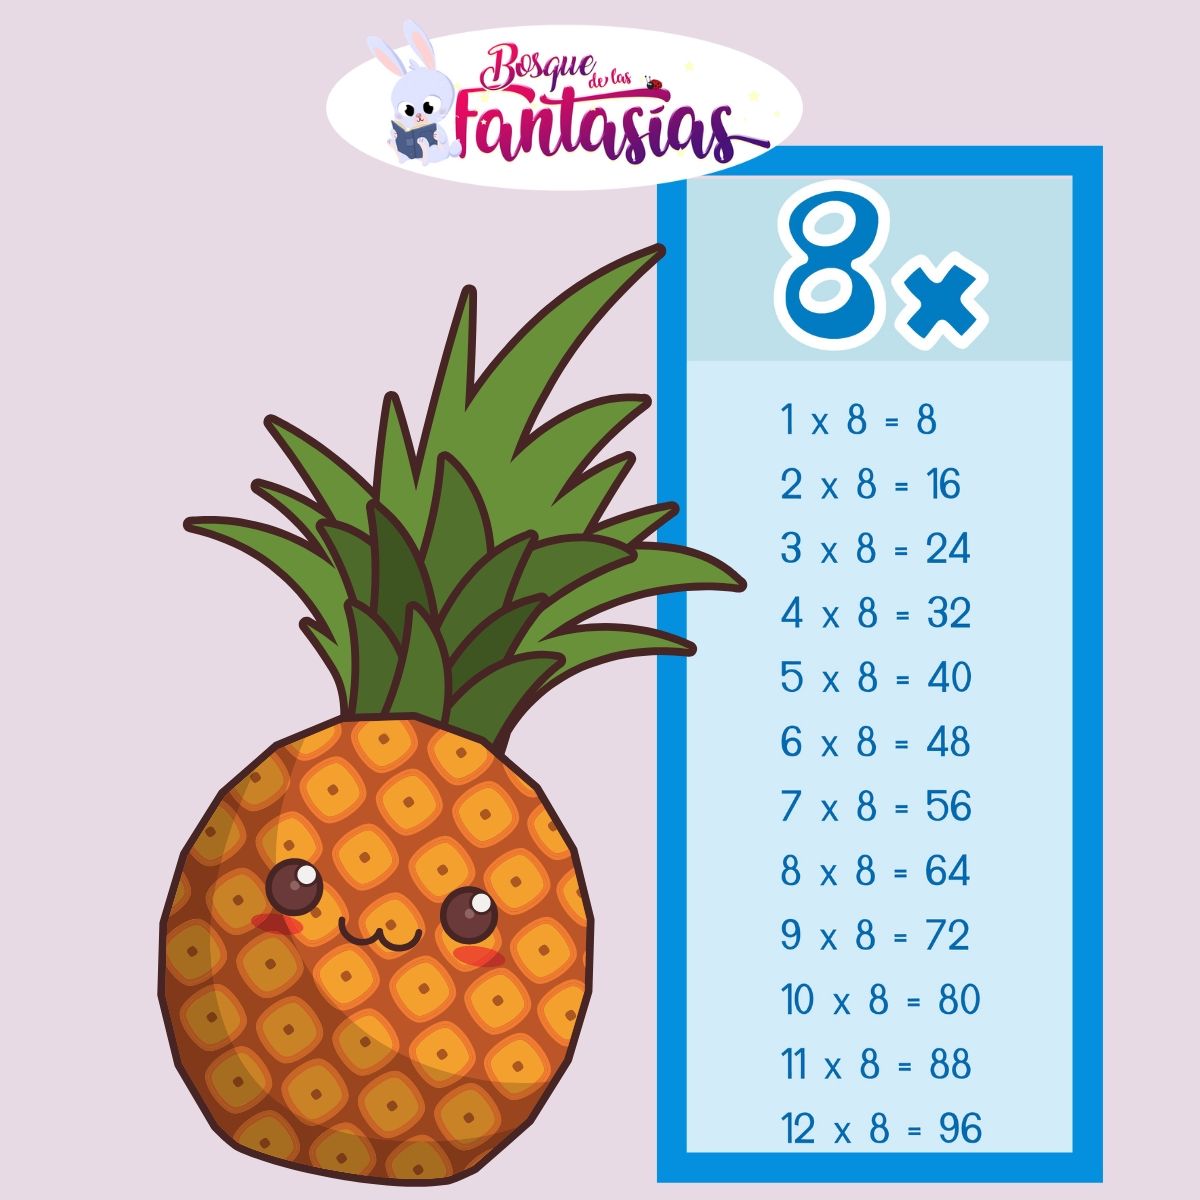 Tablas De Multiplicar 8 tablas de multiplicar del 8 - Juegos infantiles